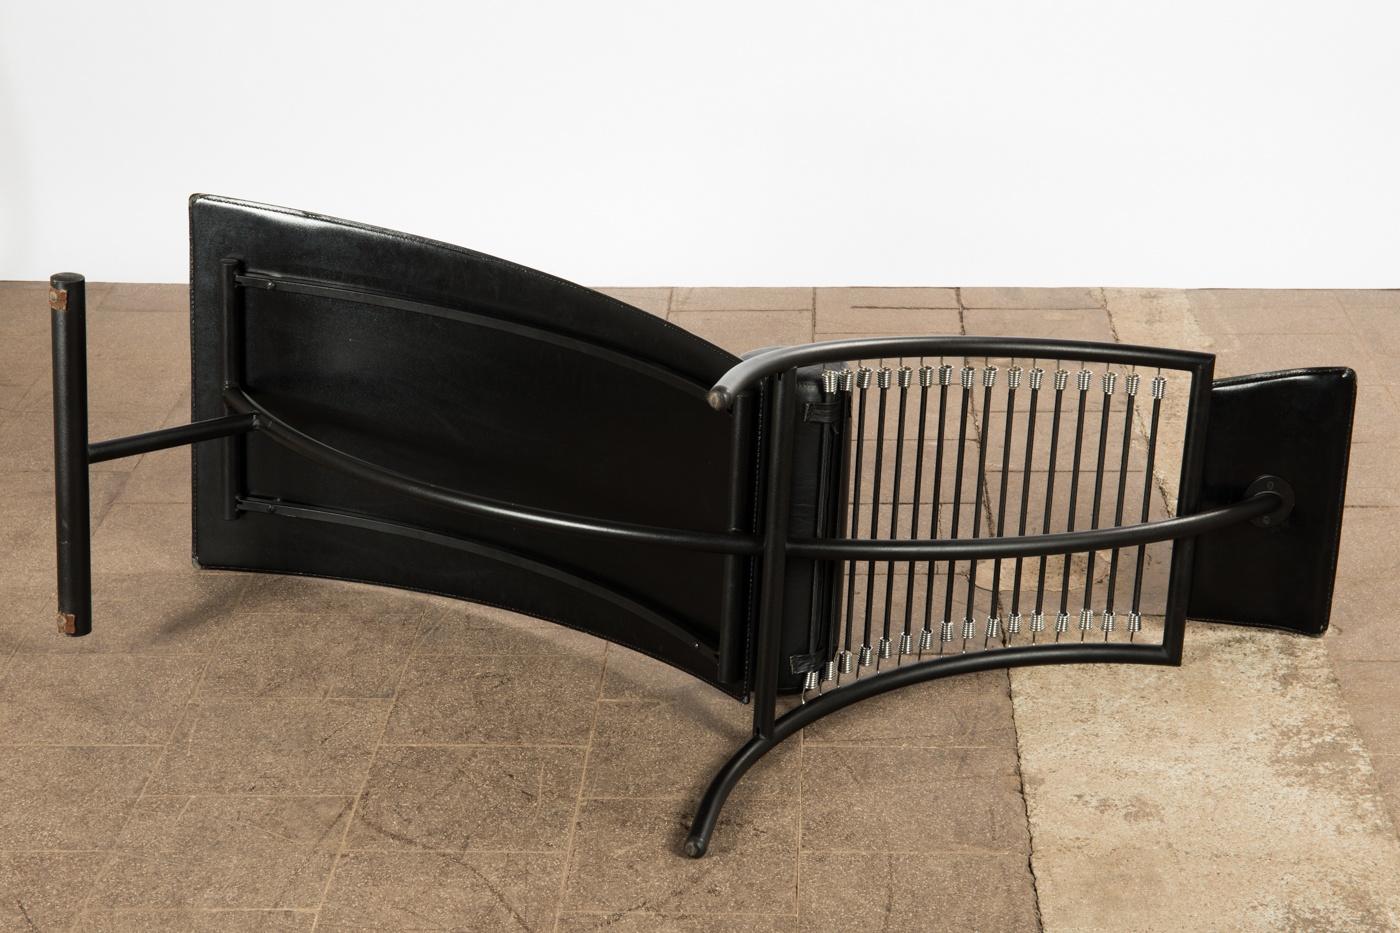 Chaise longue post-moderne design italien, circa 1980, construction incurvée en métal laqué noir et revêtement en cuir noir.